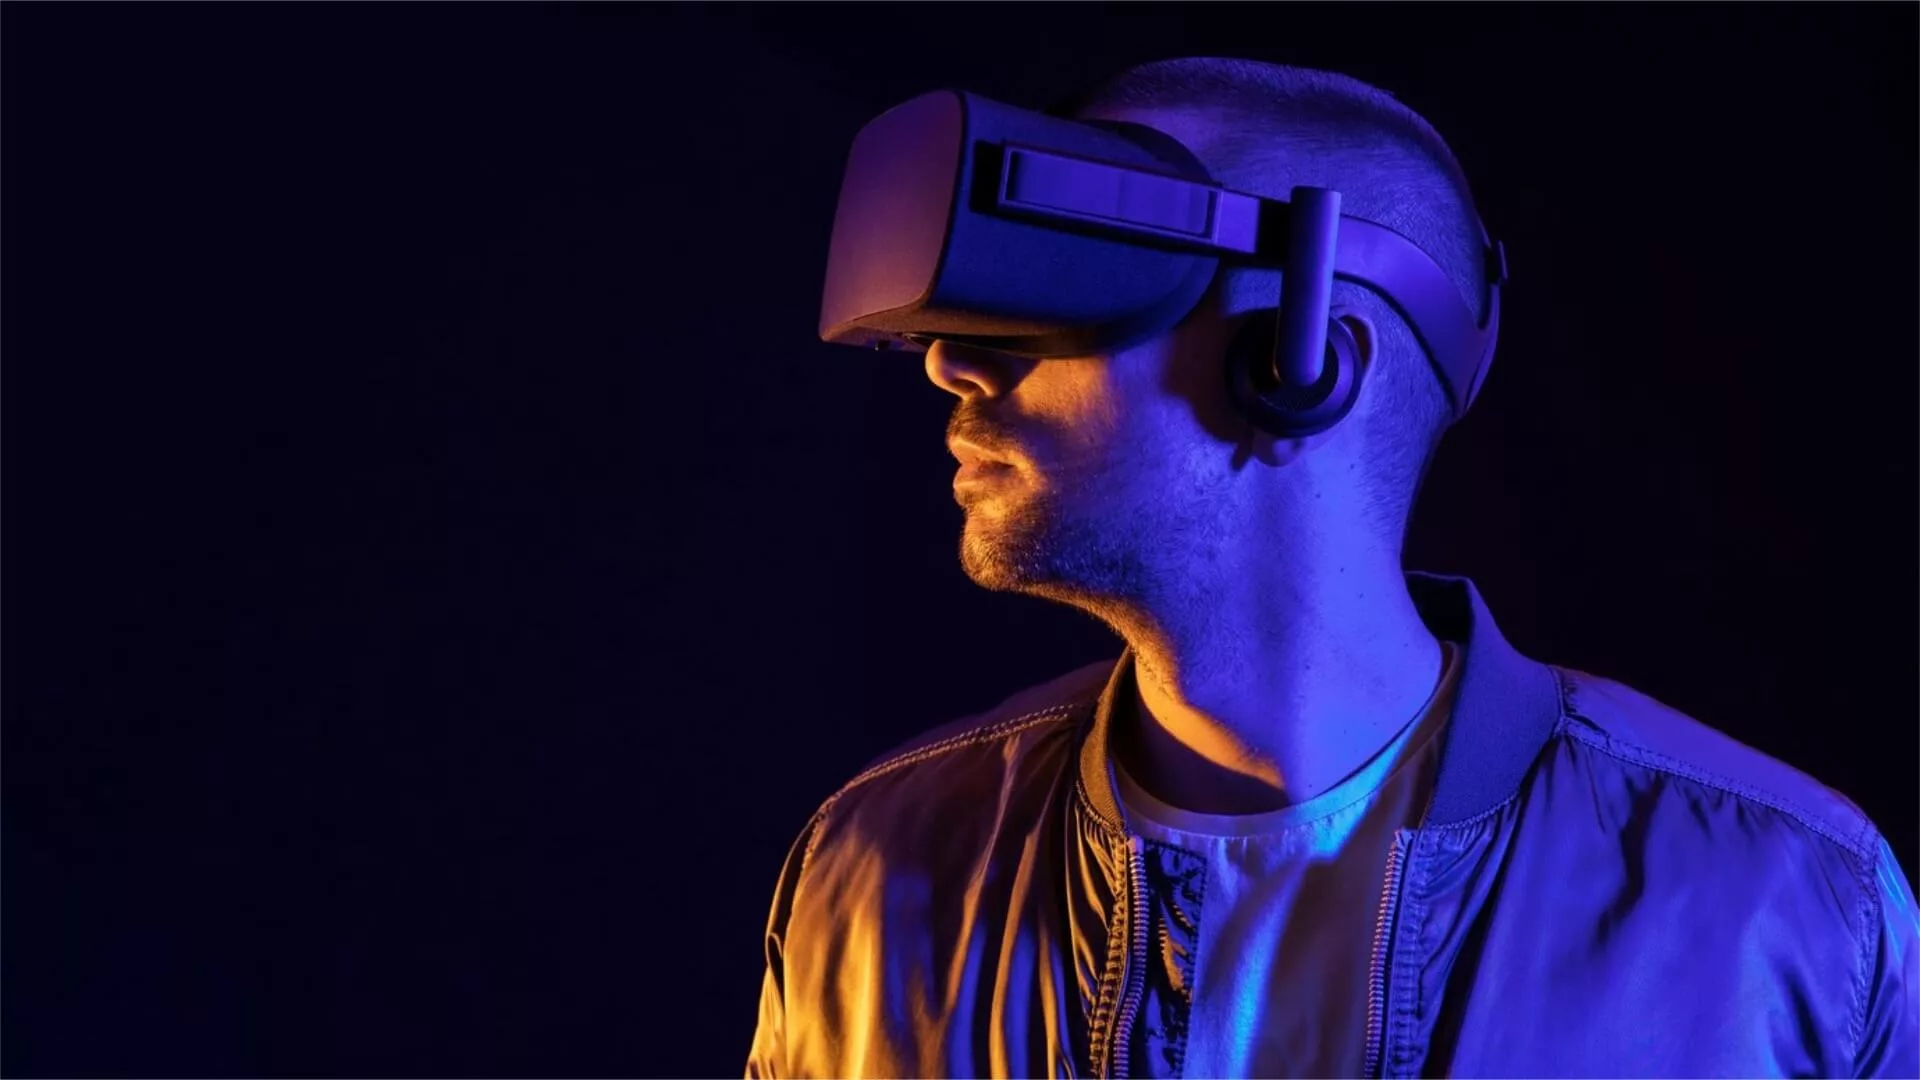 Realidade virtual e o futuro da publicidade e experiência do consumidor